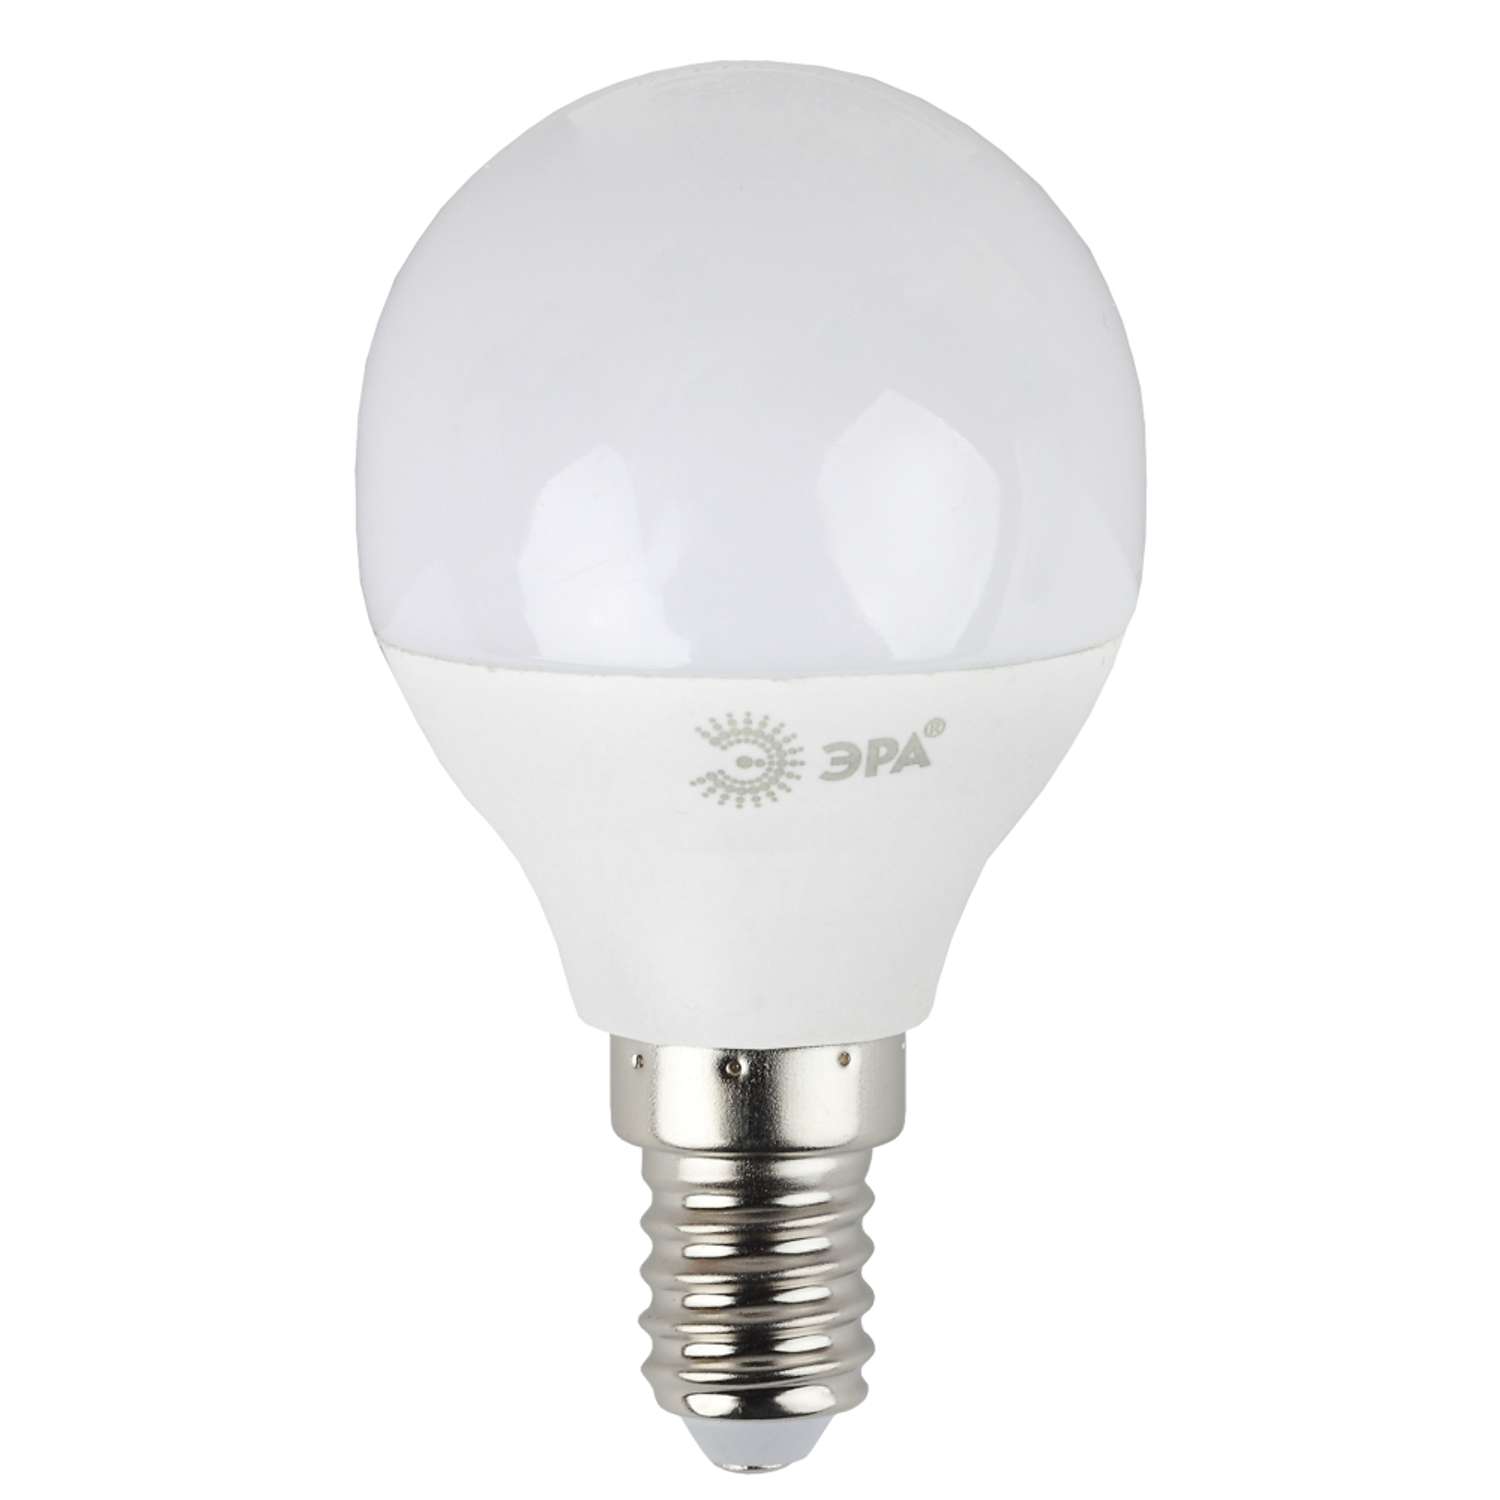 Лампочка светодиодная Эра Red Line LED P45-8W-840-E14 шар нейтральный белый свет - фото 2